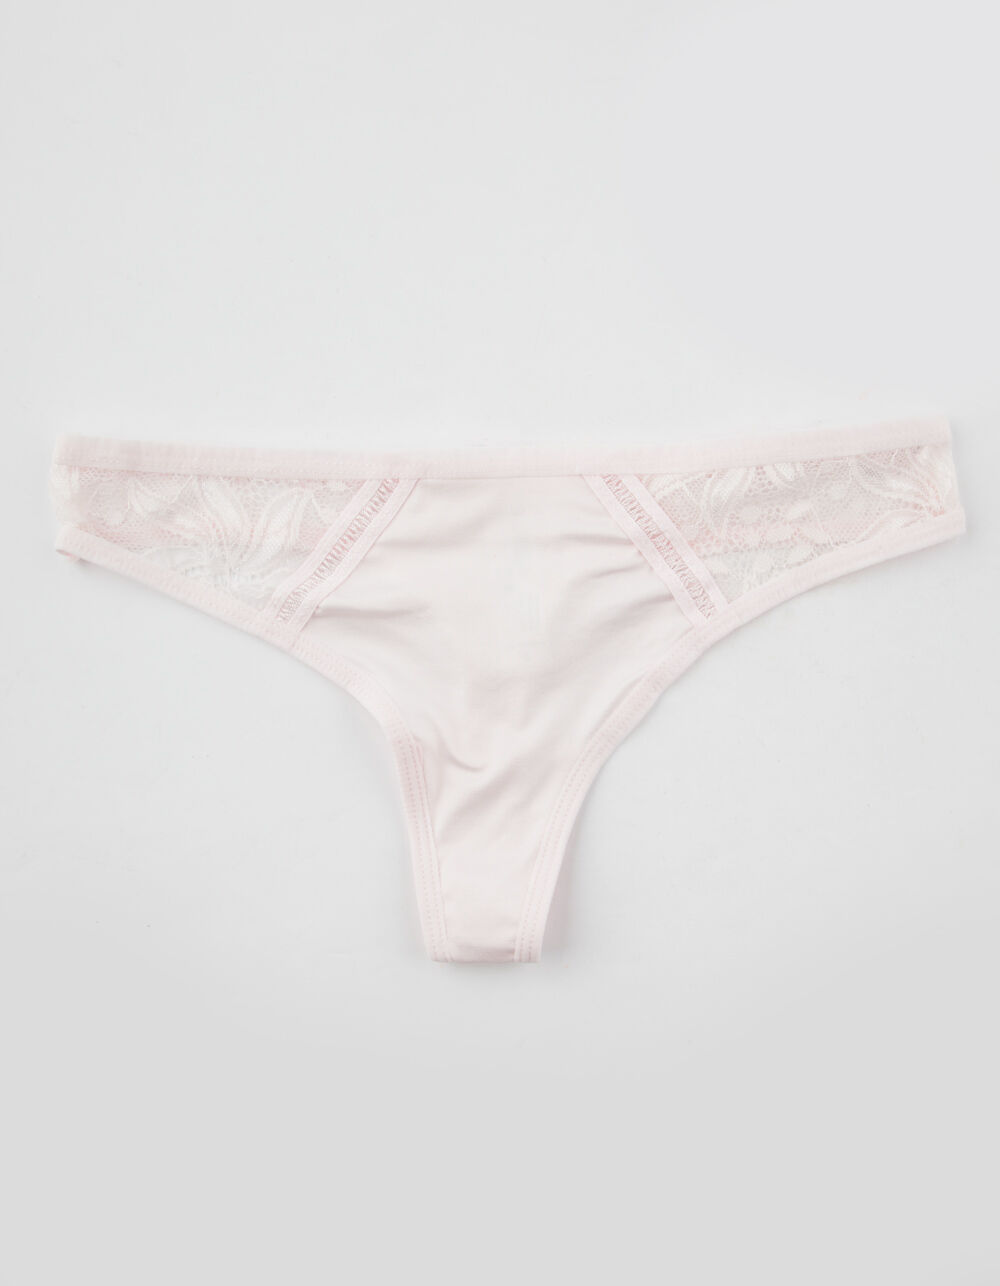 FULL TILT Lace Sides Light Pink Thong - PINK | Tillys